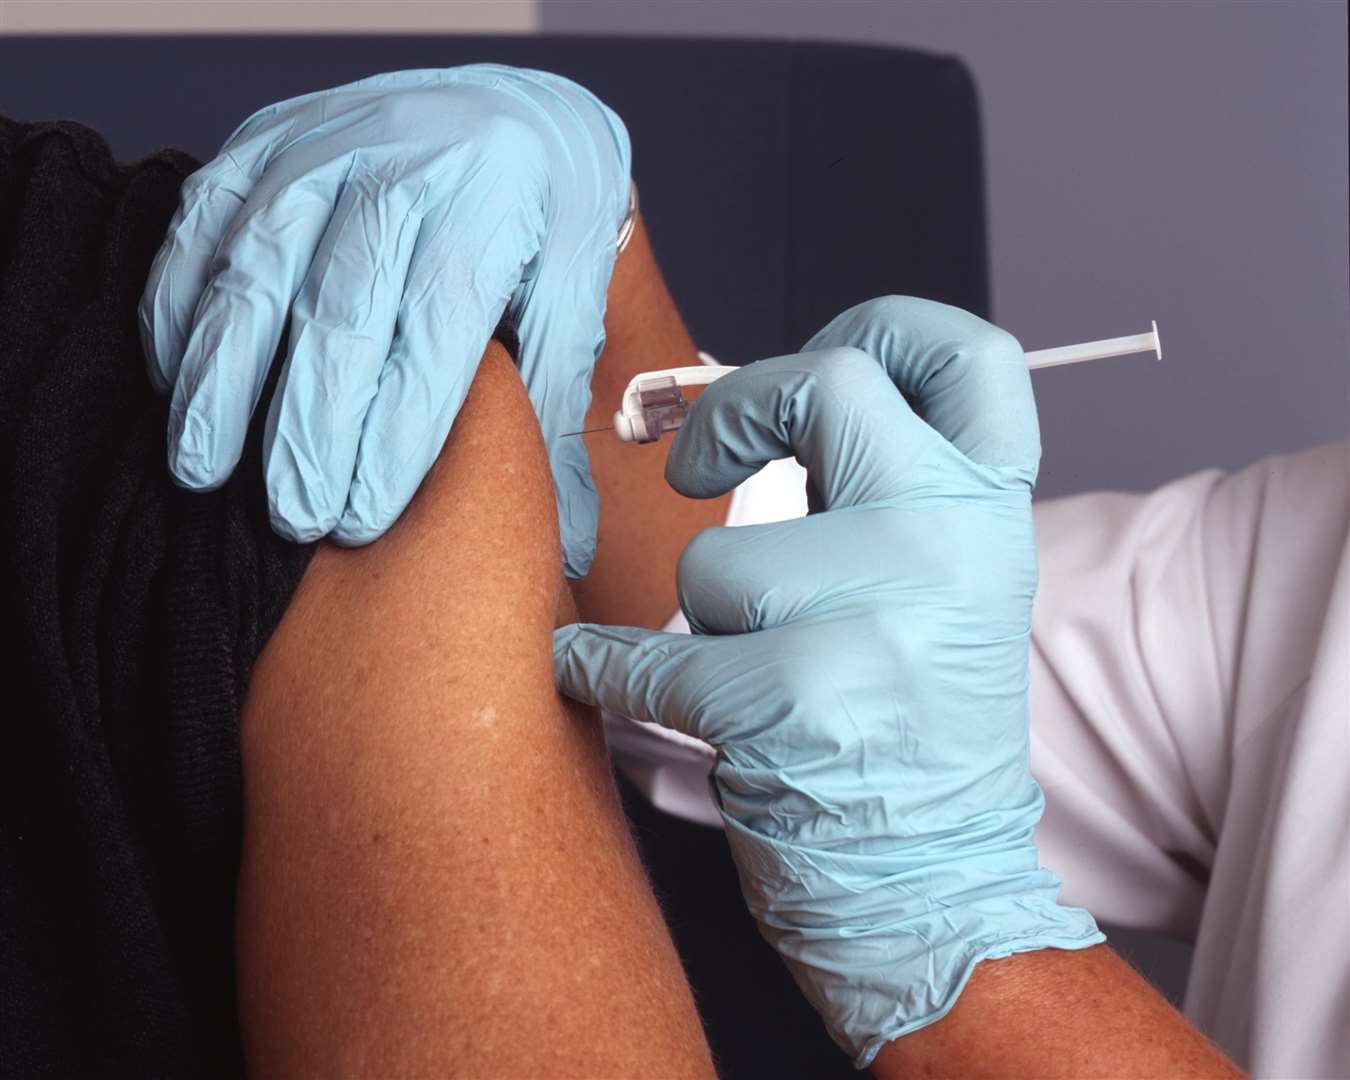 Vaccines will start to be issued next week, according to health secretary Matt Hancock